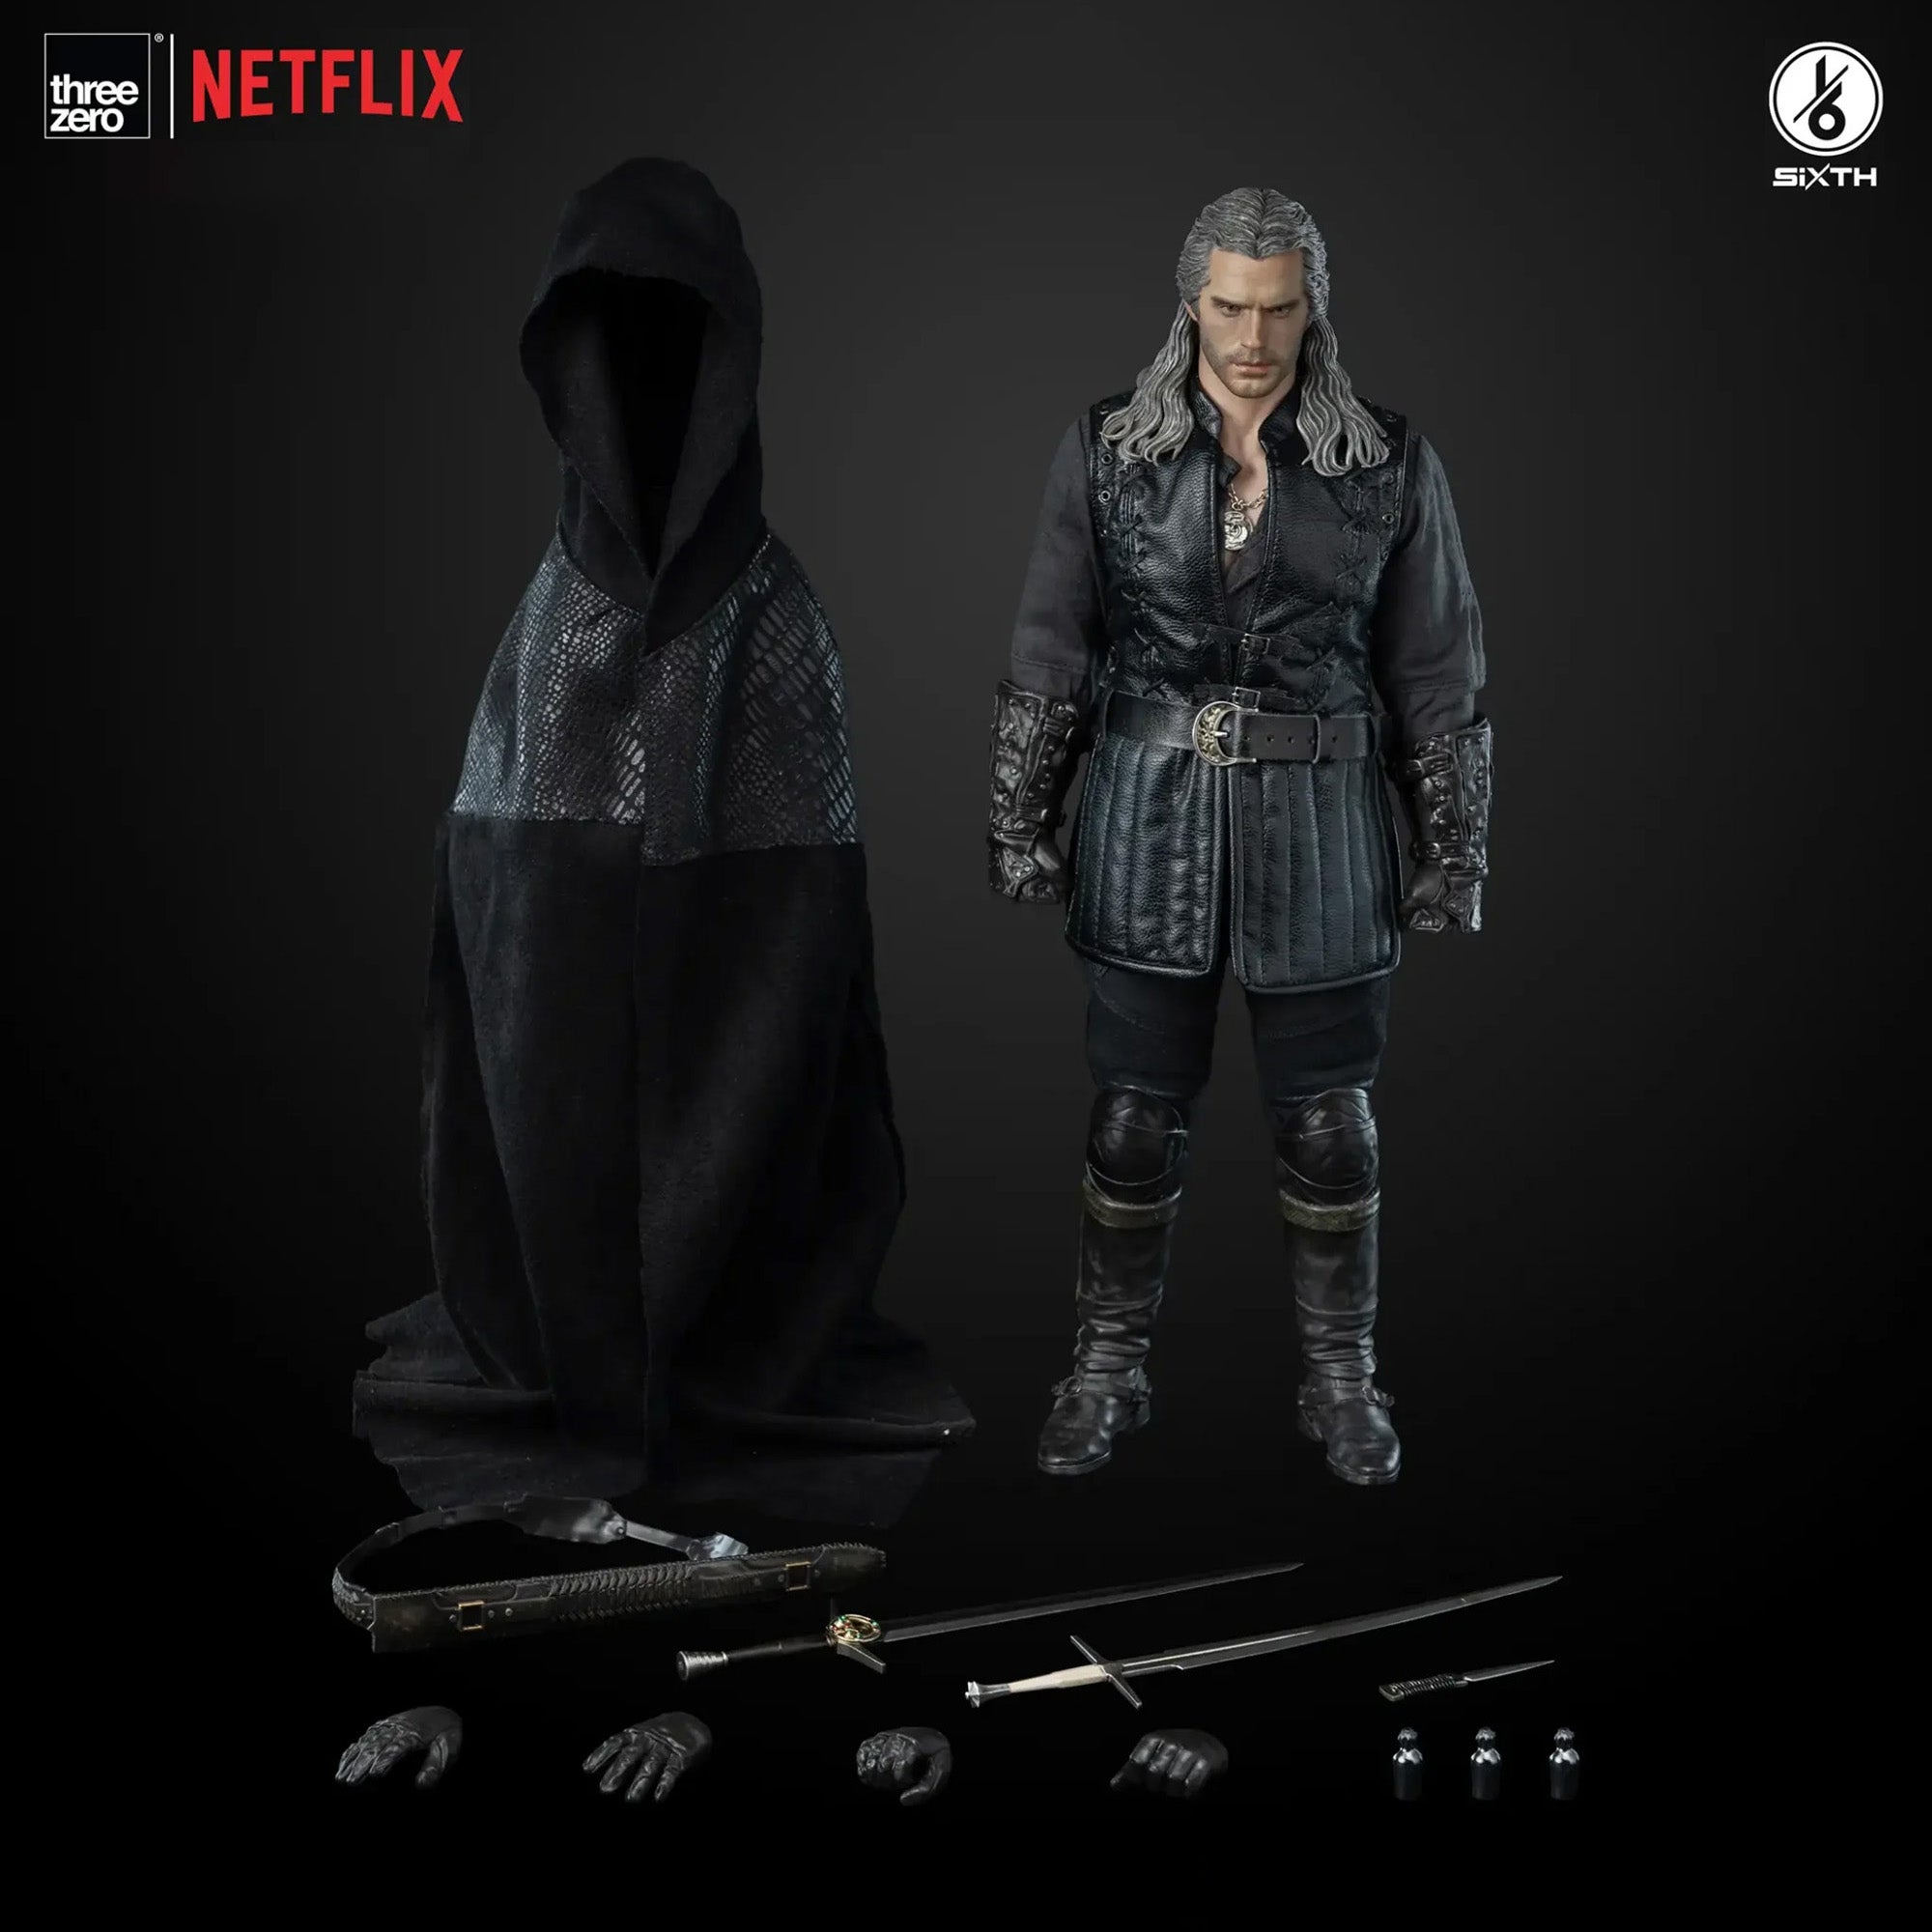 threezero - The Witcher - Geralt of Rivia (Season 3) (1/6 Scale) - Marvelous Toys